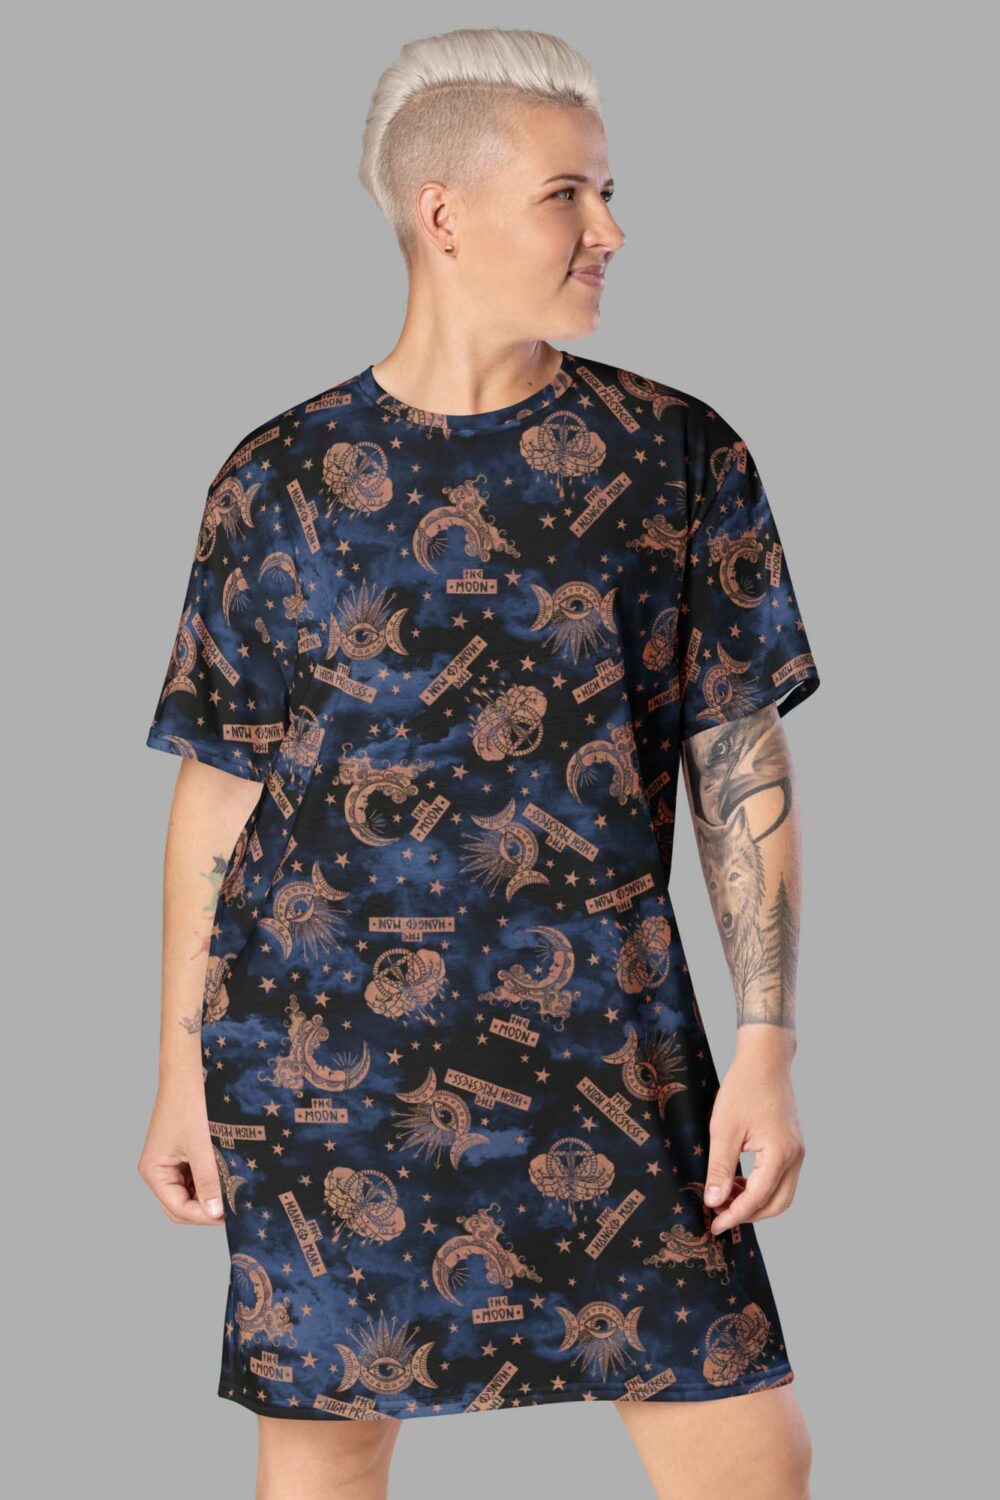 cosmic drifters tarot print t shirt dress front